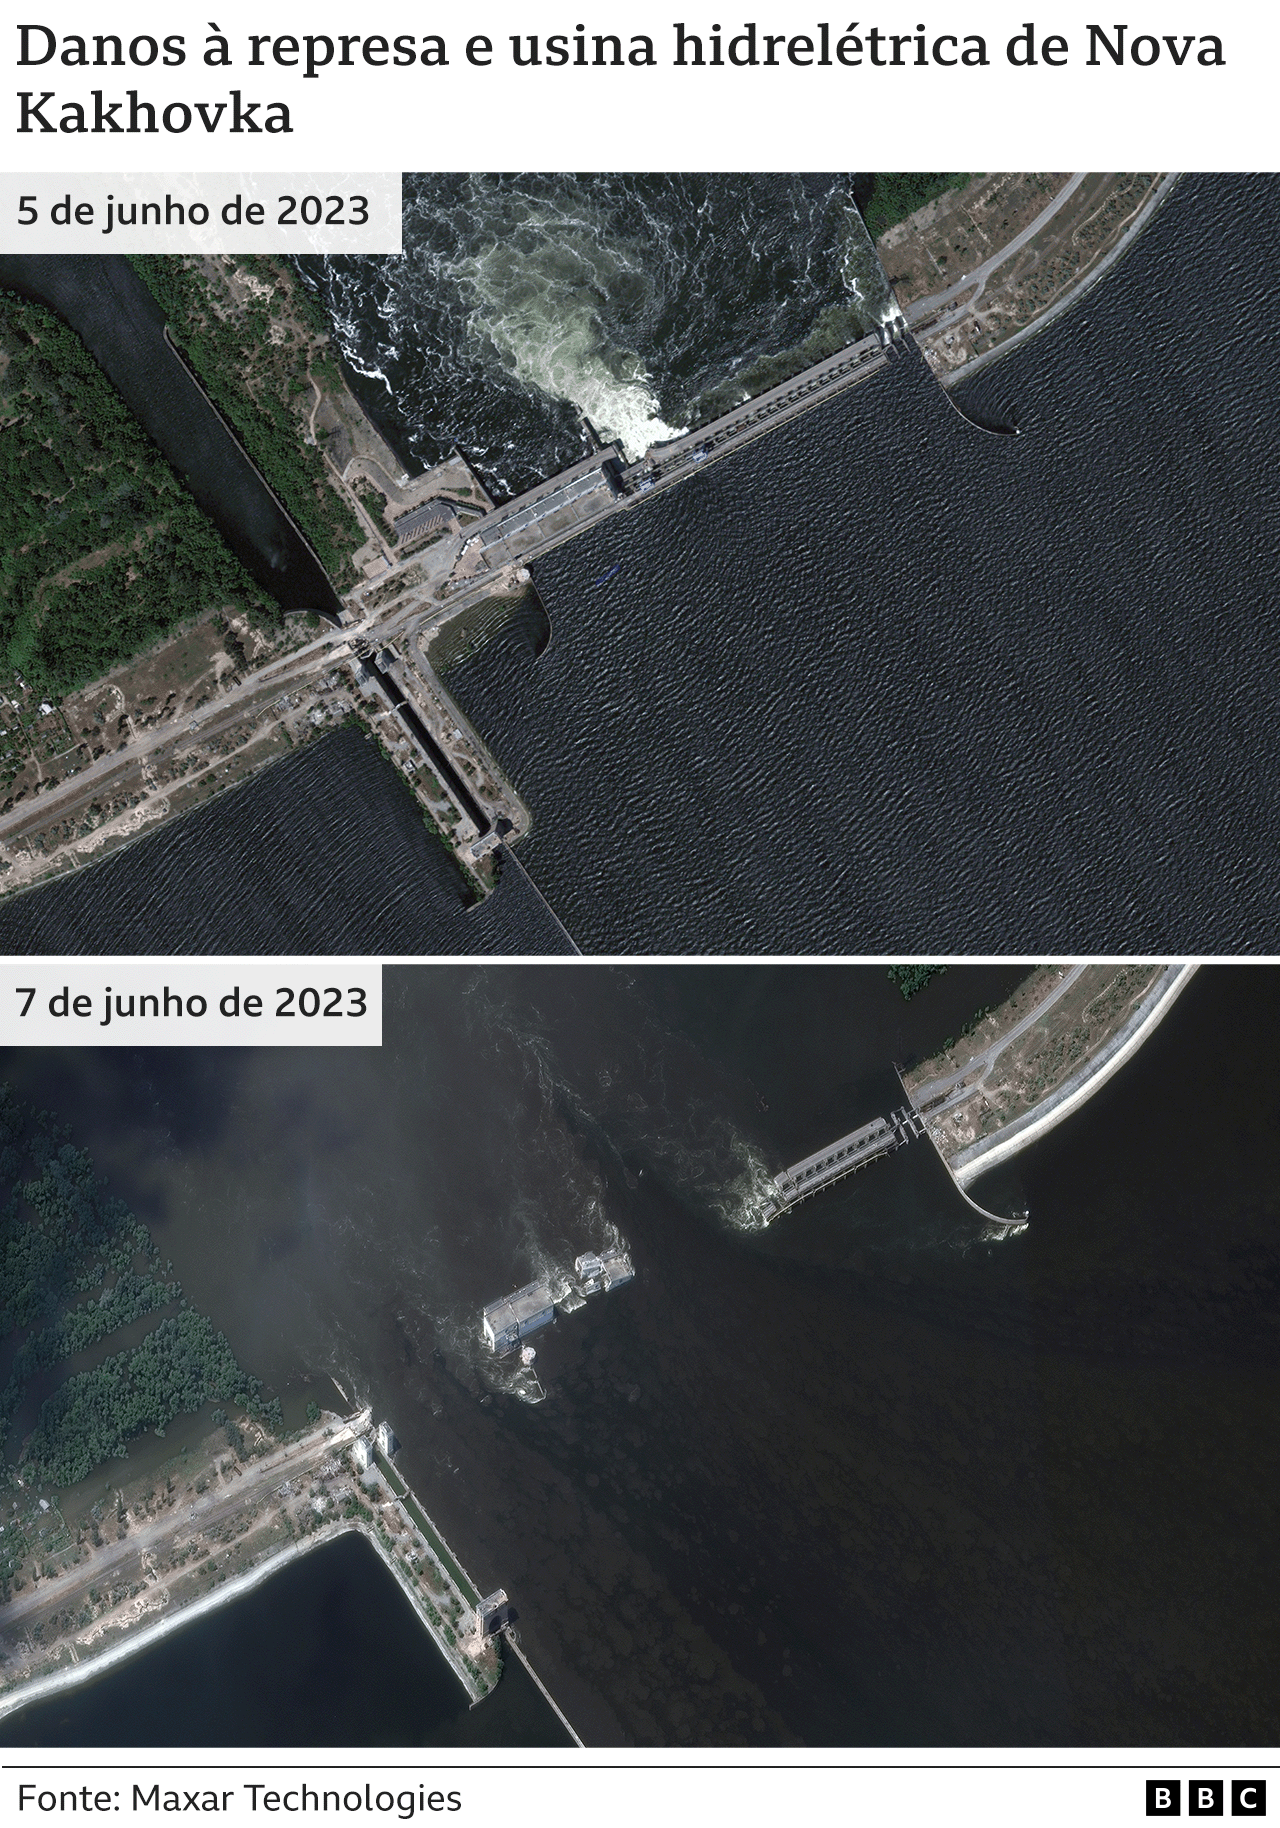 Imagens de satélite mostram danos à barragem e à usina